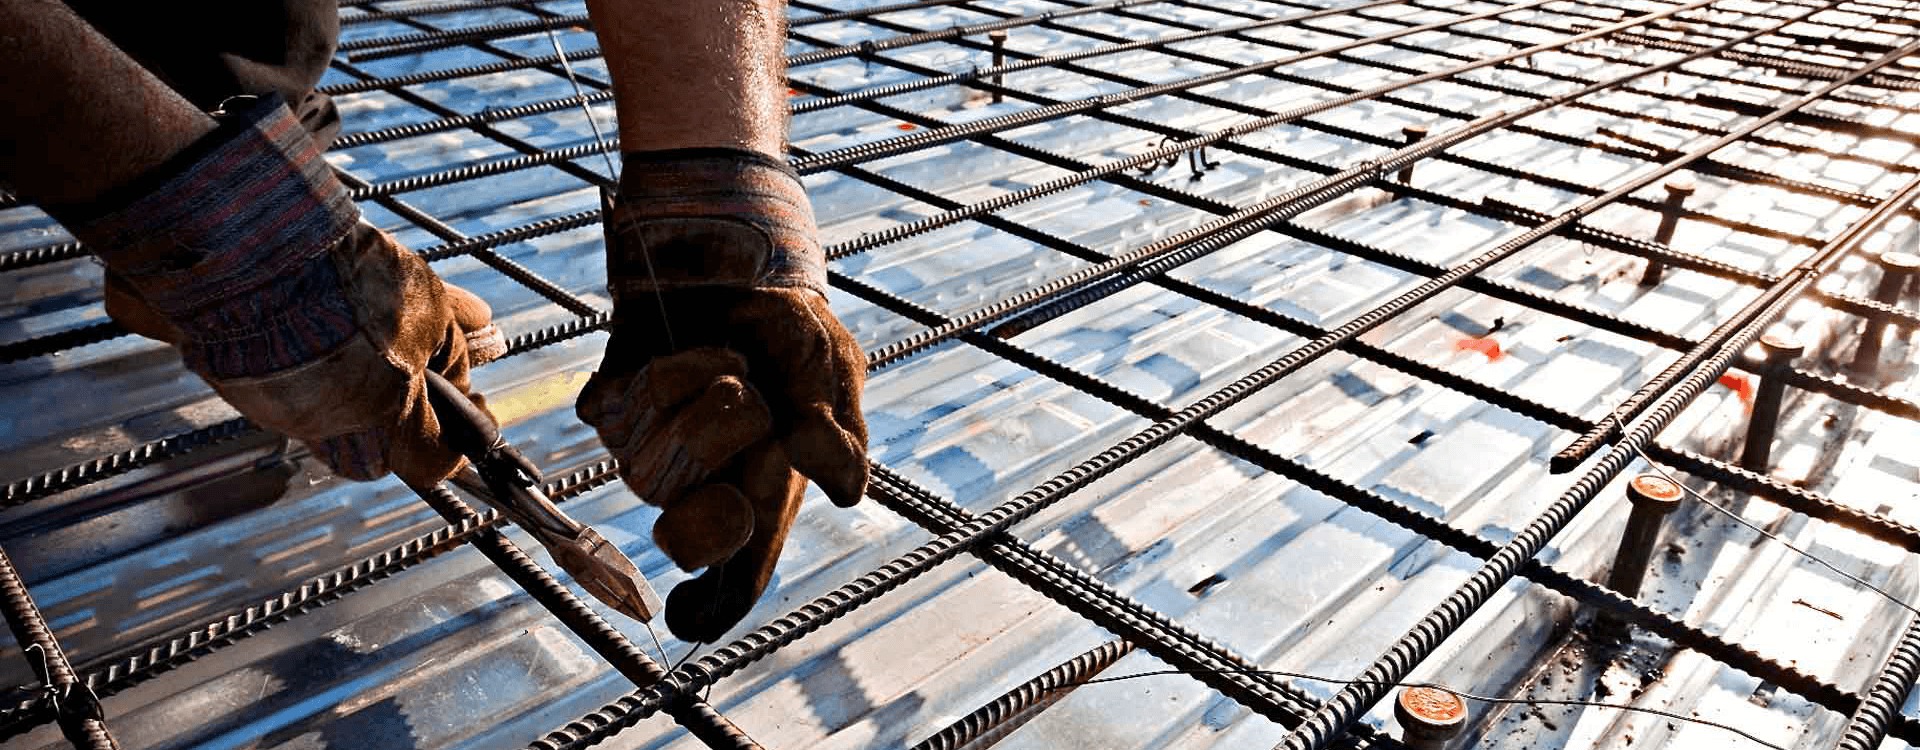 Защитный слой бетона для арматуры в фундаменте — рекомендуемая толщина раствора